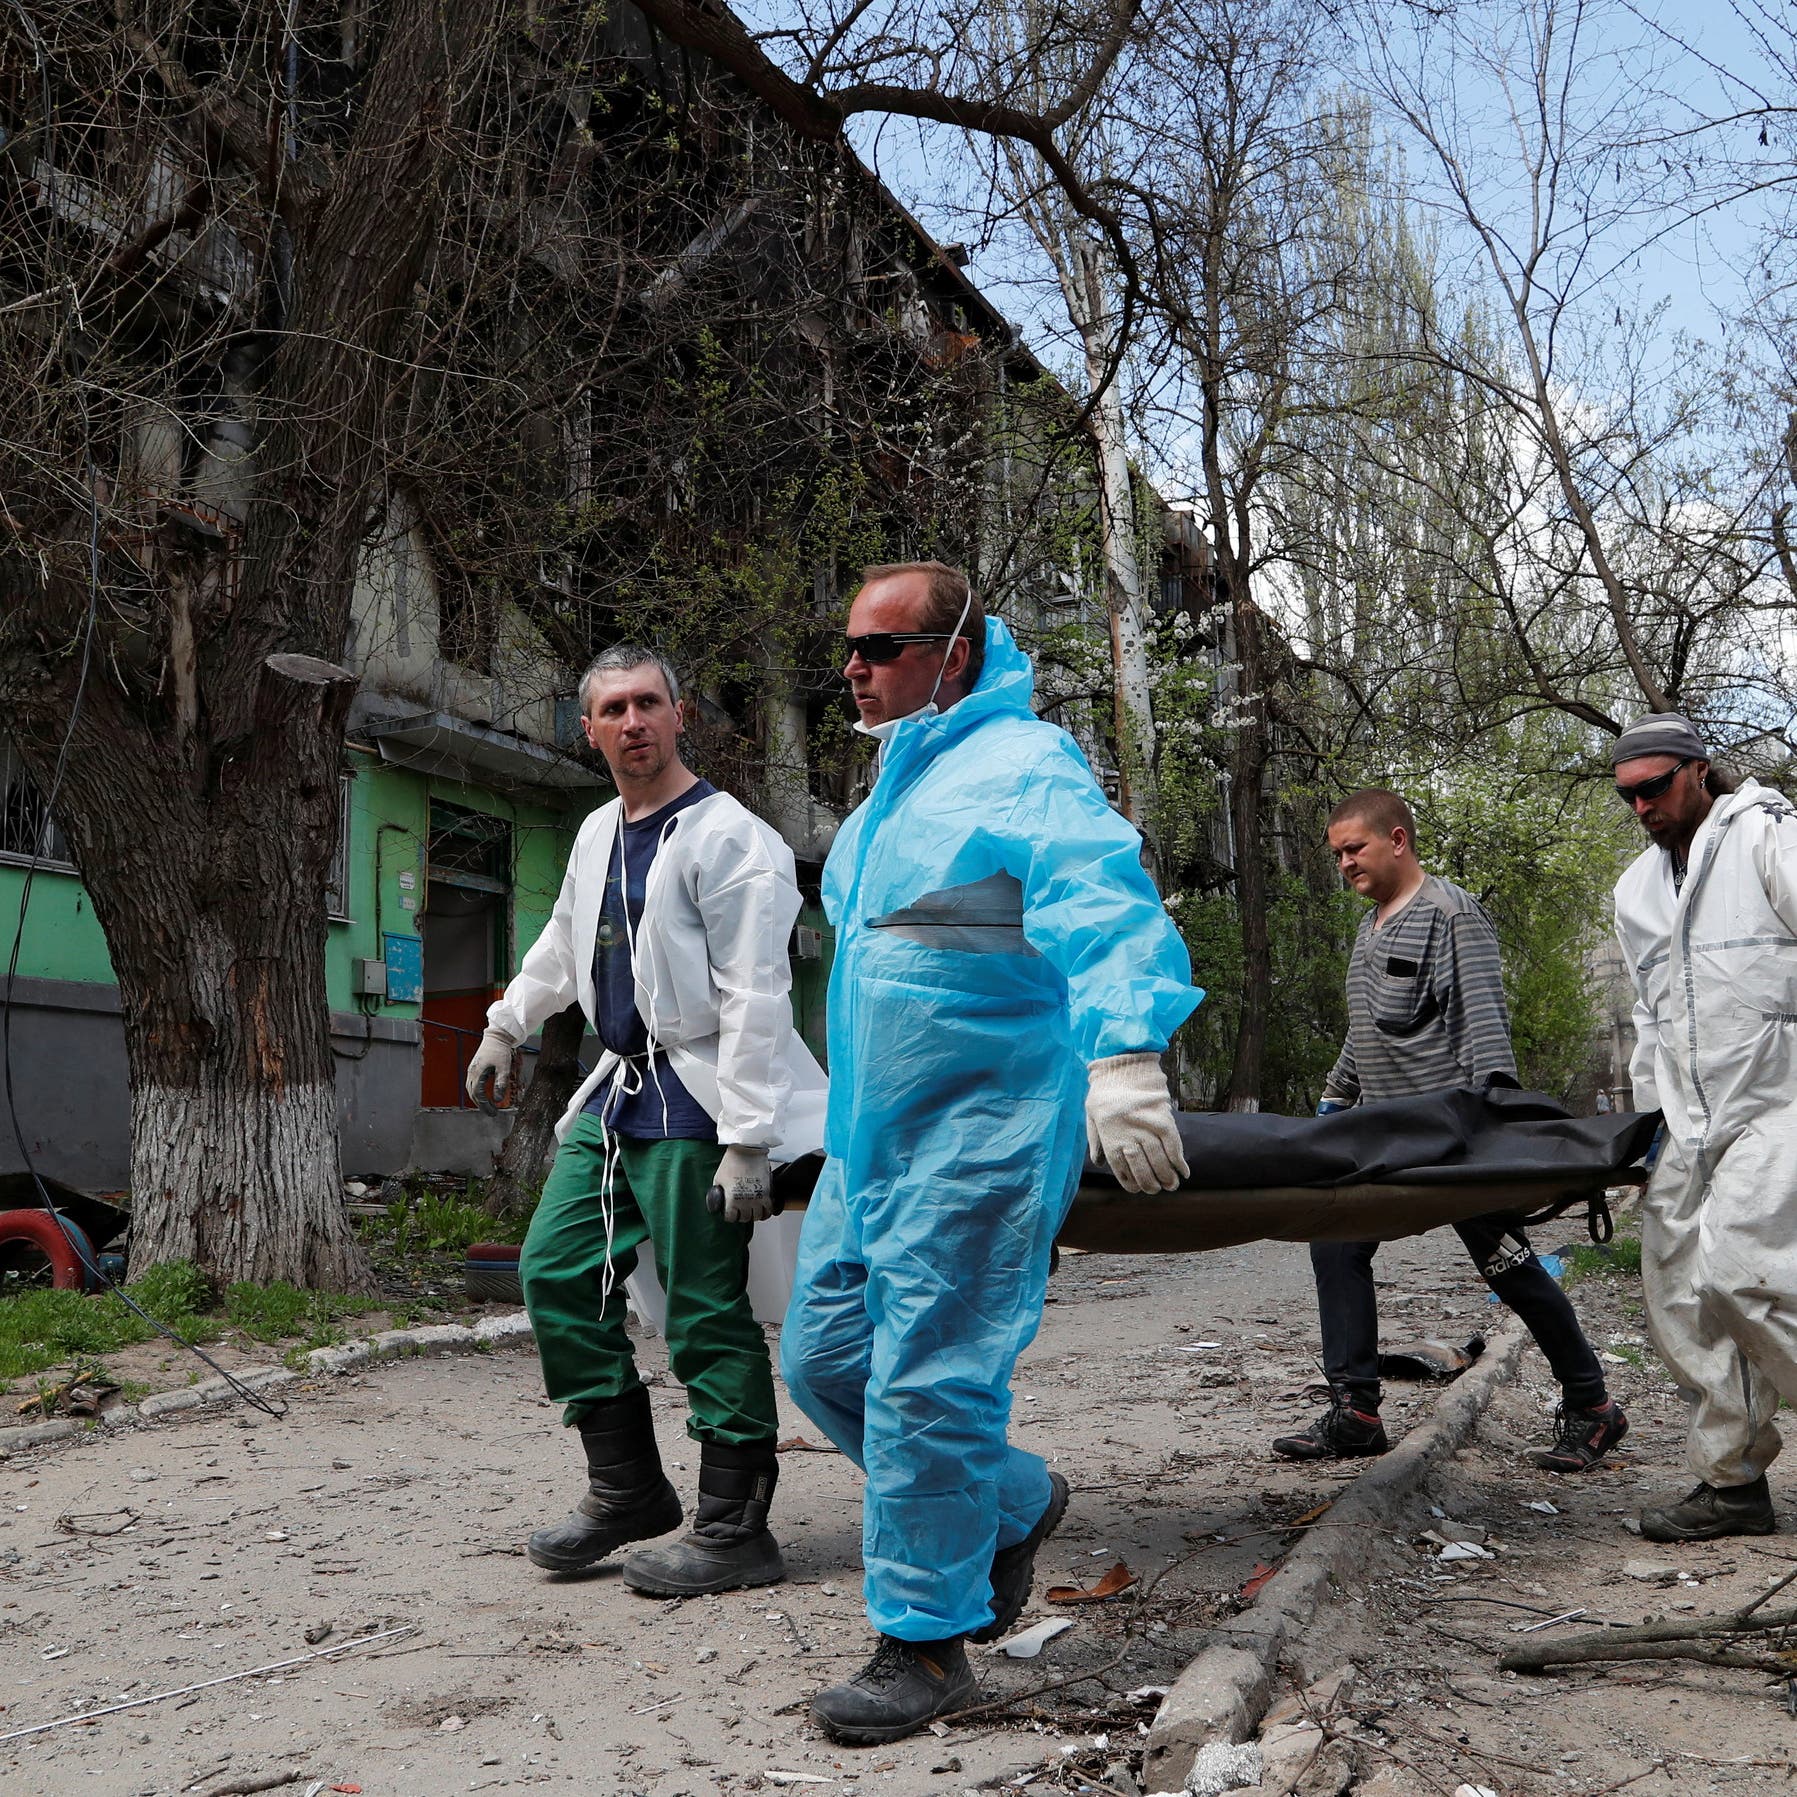 الأمم المتحدة: قتلى أوكرانيا أعلى بالآلاف من الأرقام المعلنة